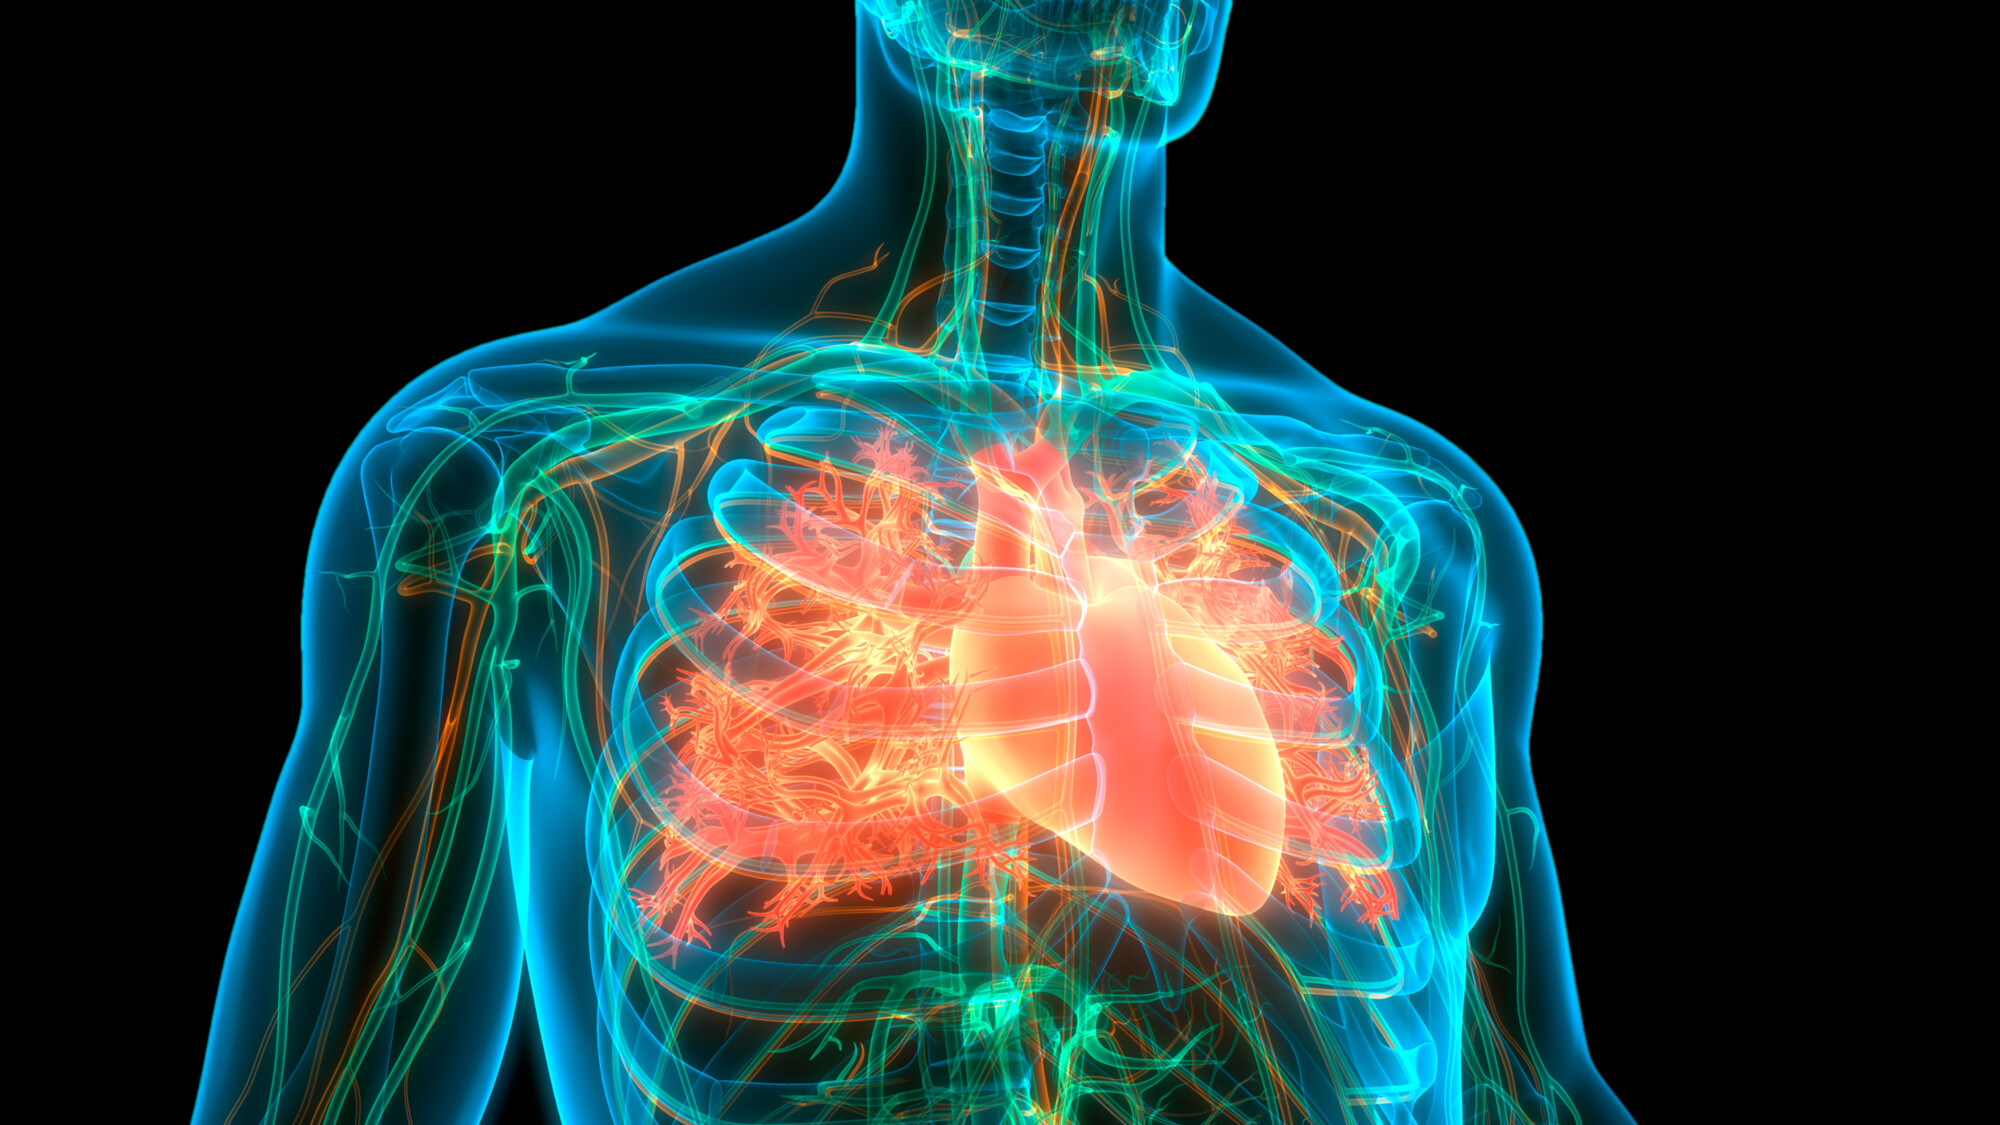 Herzrasen und Herzstolpern - in Deutschland leiden rund 1,8 Millionen Menschen an Vorhofflimmern. Nicht alle Betroffenen spüren ihren chaotischen Herzschlag. Bei jedem zweiten Betroffenen tritt Vorhofflimmern ohne Beschwerden auf. Dabei ist eine Behandlung sehr wichtig, um das Schlaganfallrisiko zu senken.